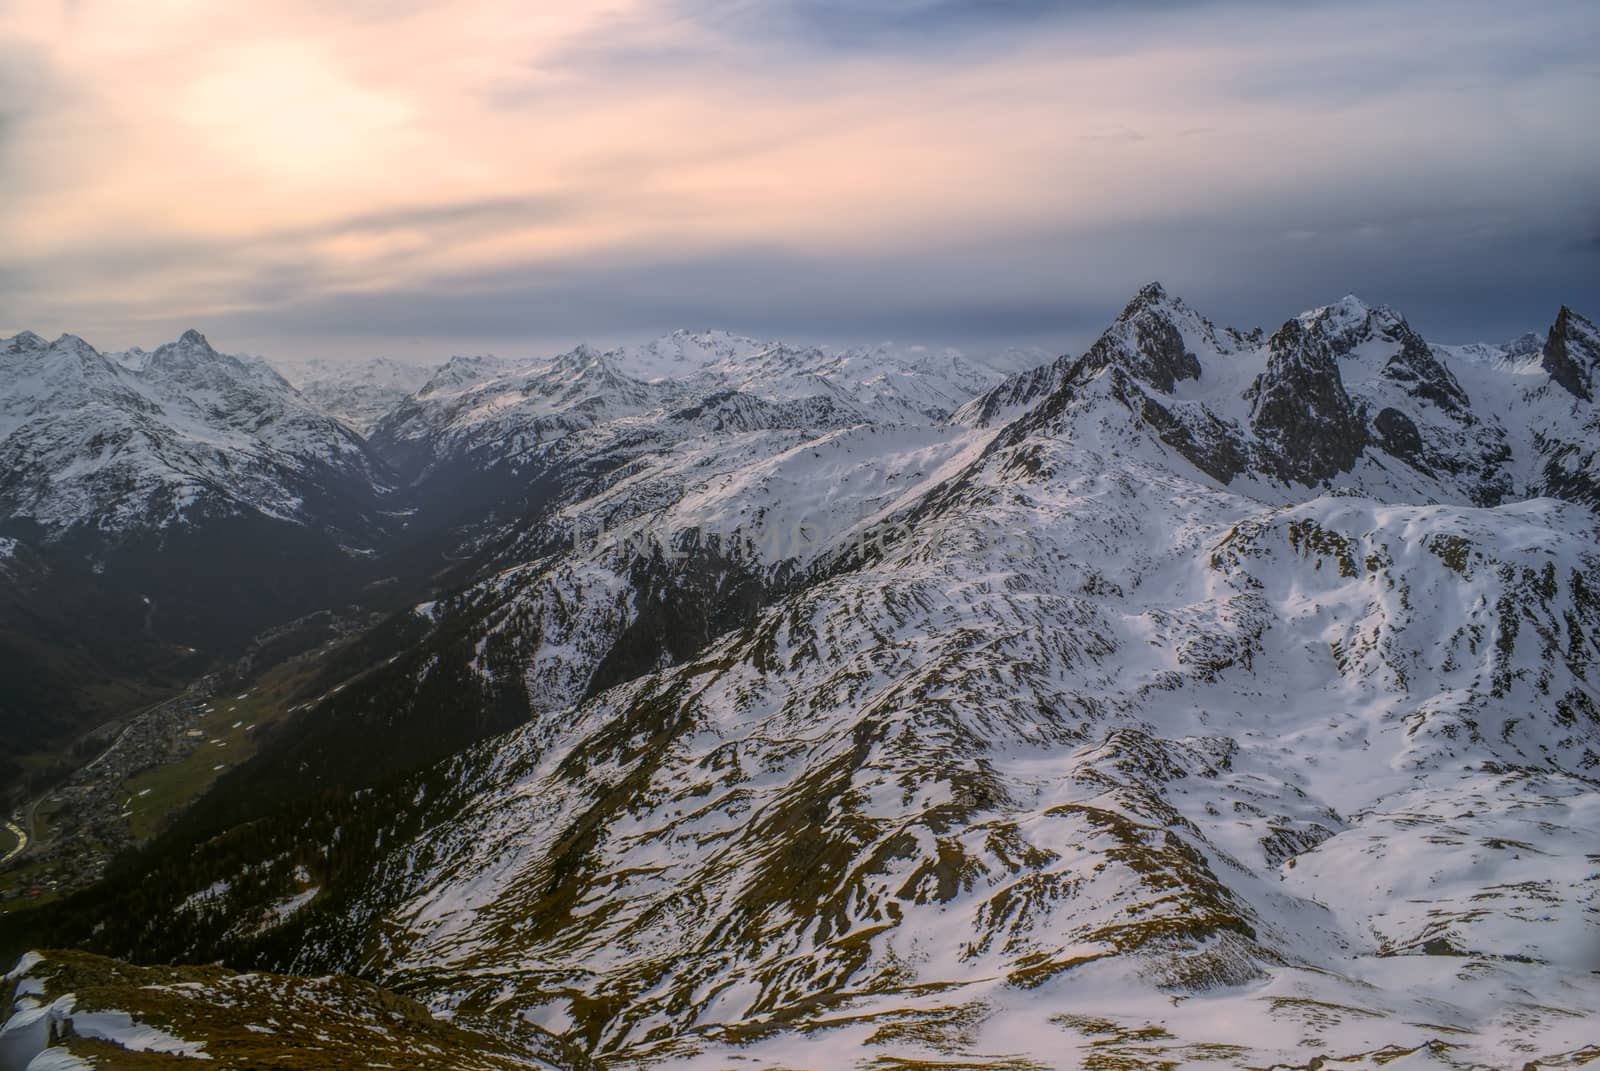 Picturesque mountains around Leutkircher Hutte in Tirol Alps in Austria